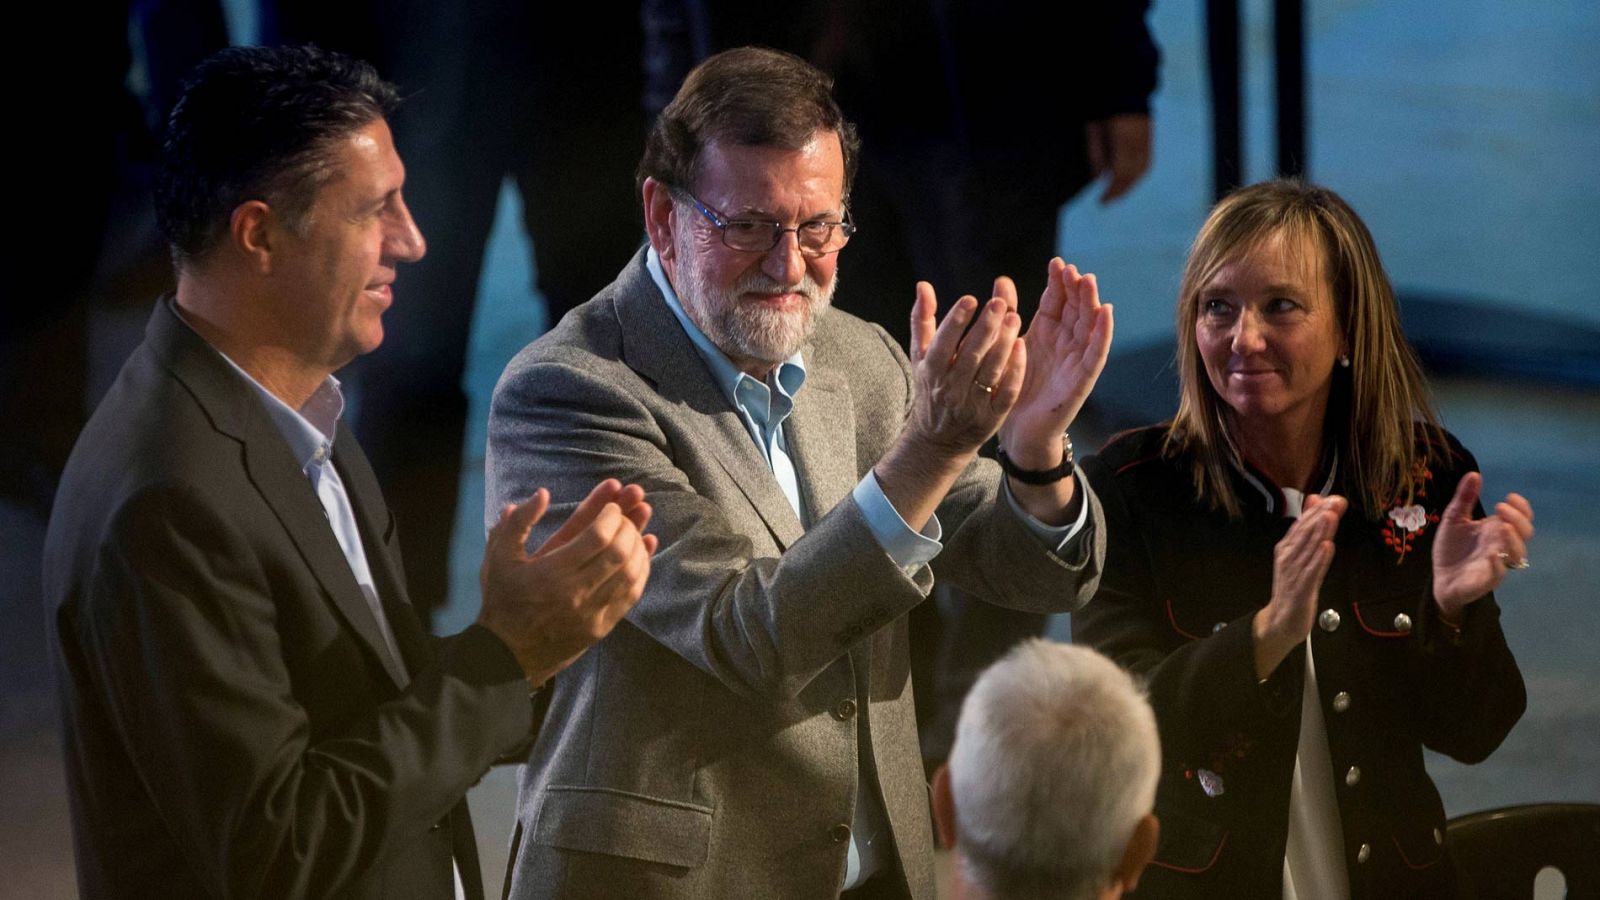 Rajoy defiende la unidad de España y la Constitución frente a las "ensoñaciones de algunos"